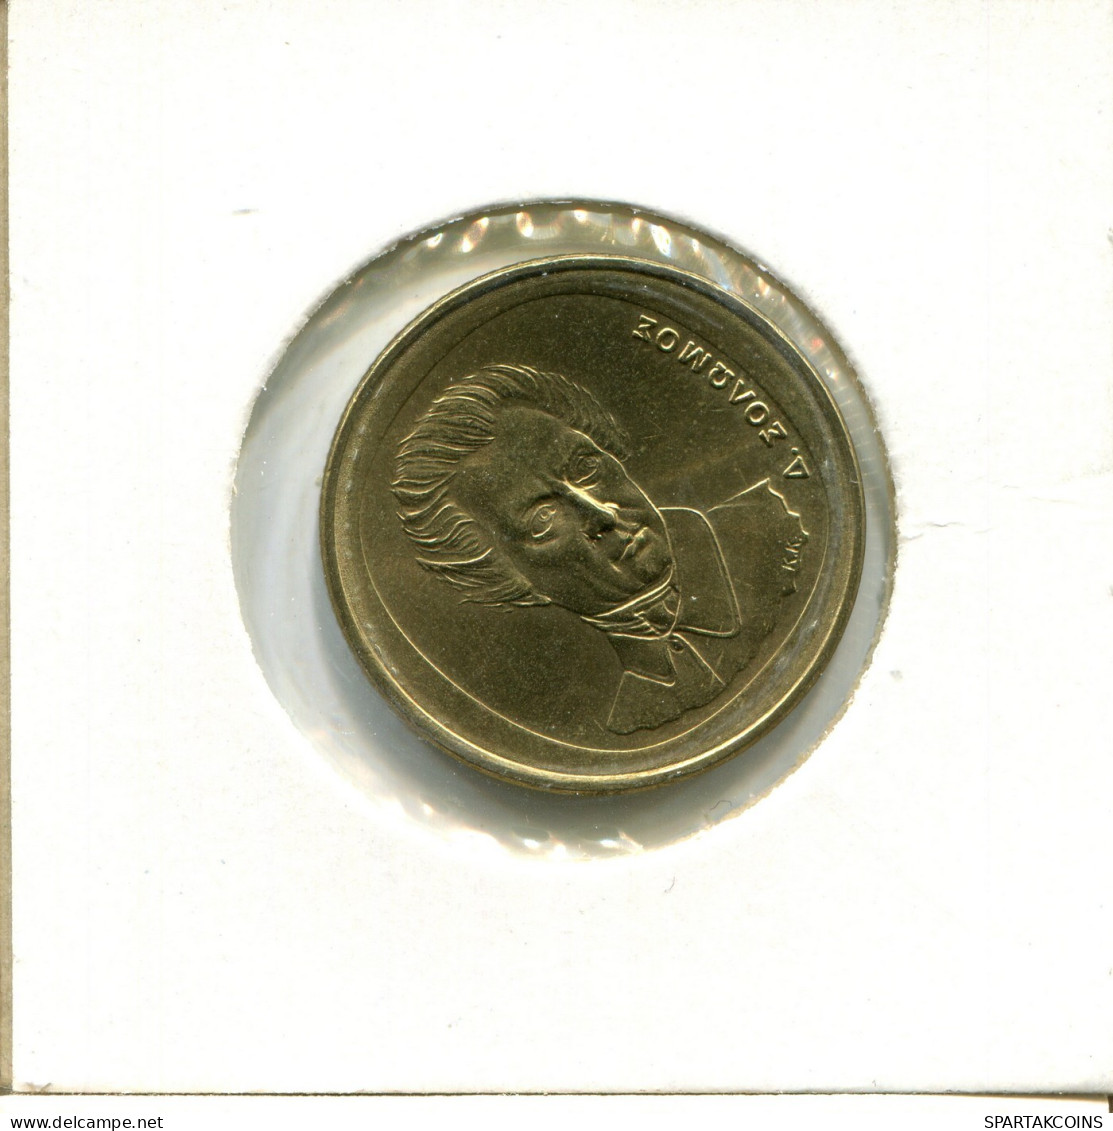 20 DRACHMES 1998 GRIECHENLAND GREECE Münze #AX655.D.A - Griechenland